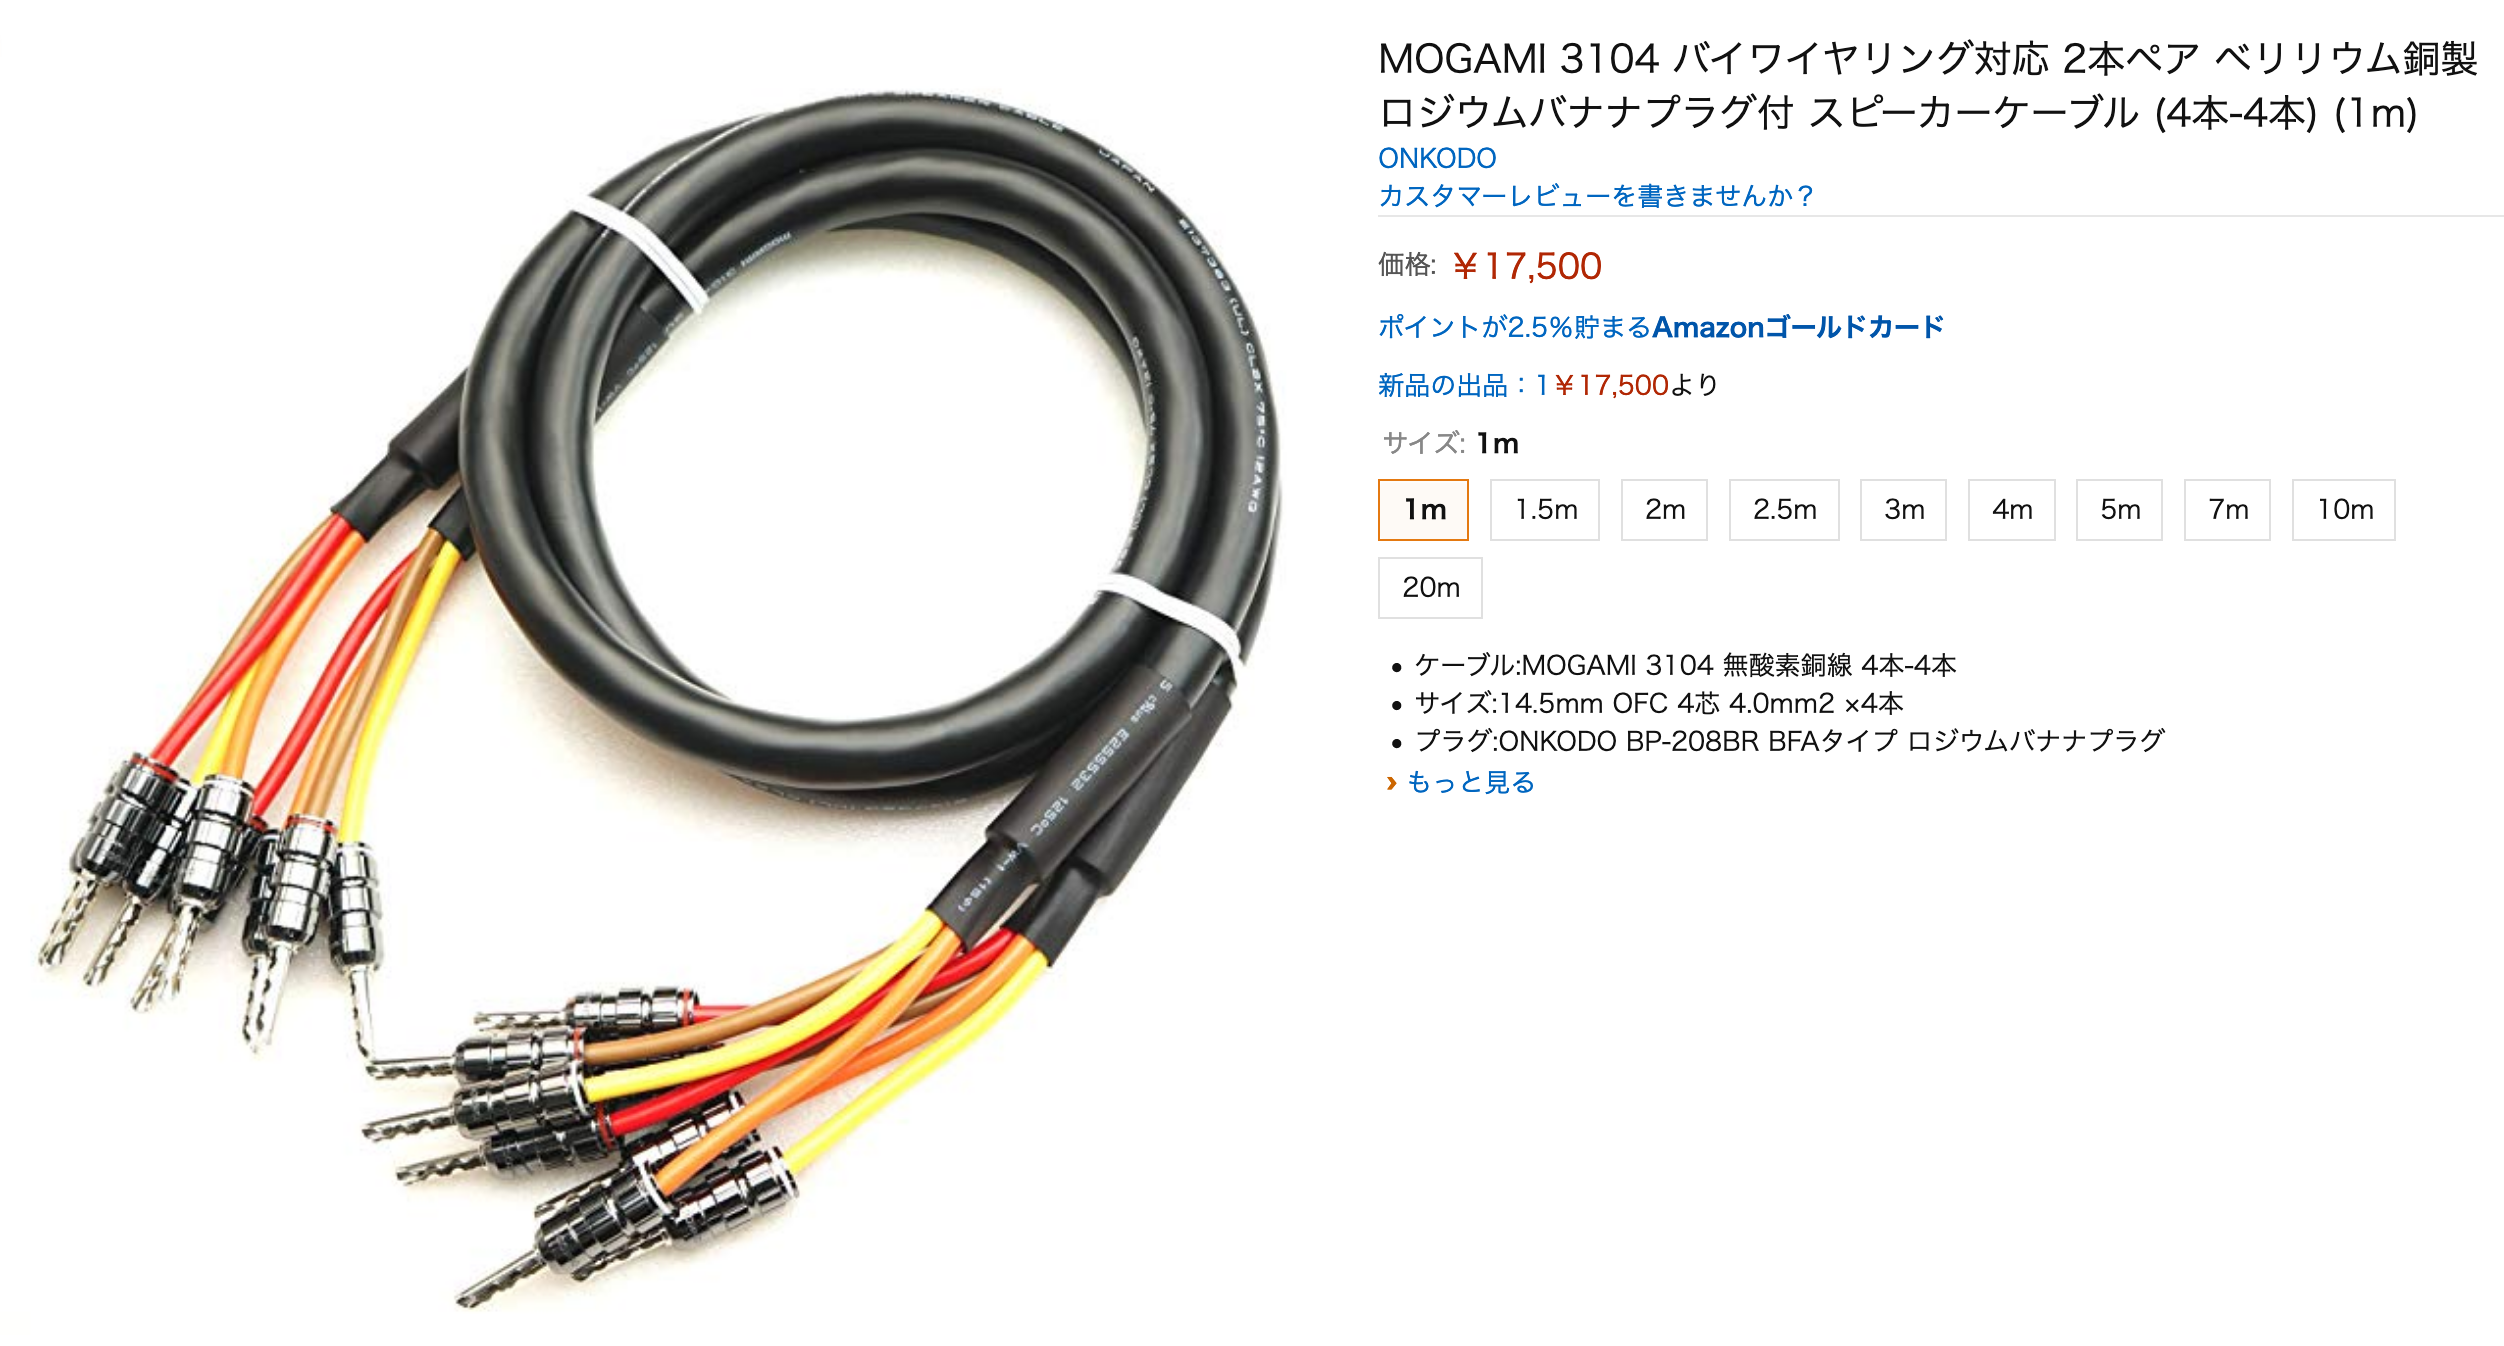 くらしを楽しむアイテム MOGAMI 2477 モガミ <BR>NEGLEX Hi-Fi <br